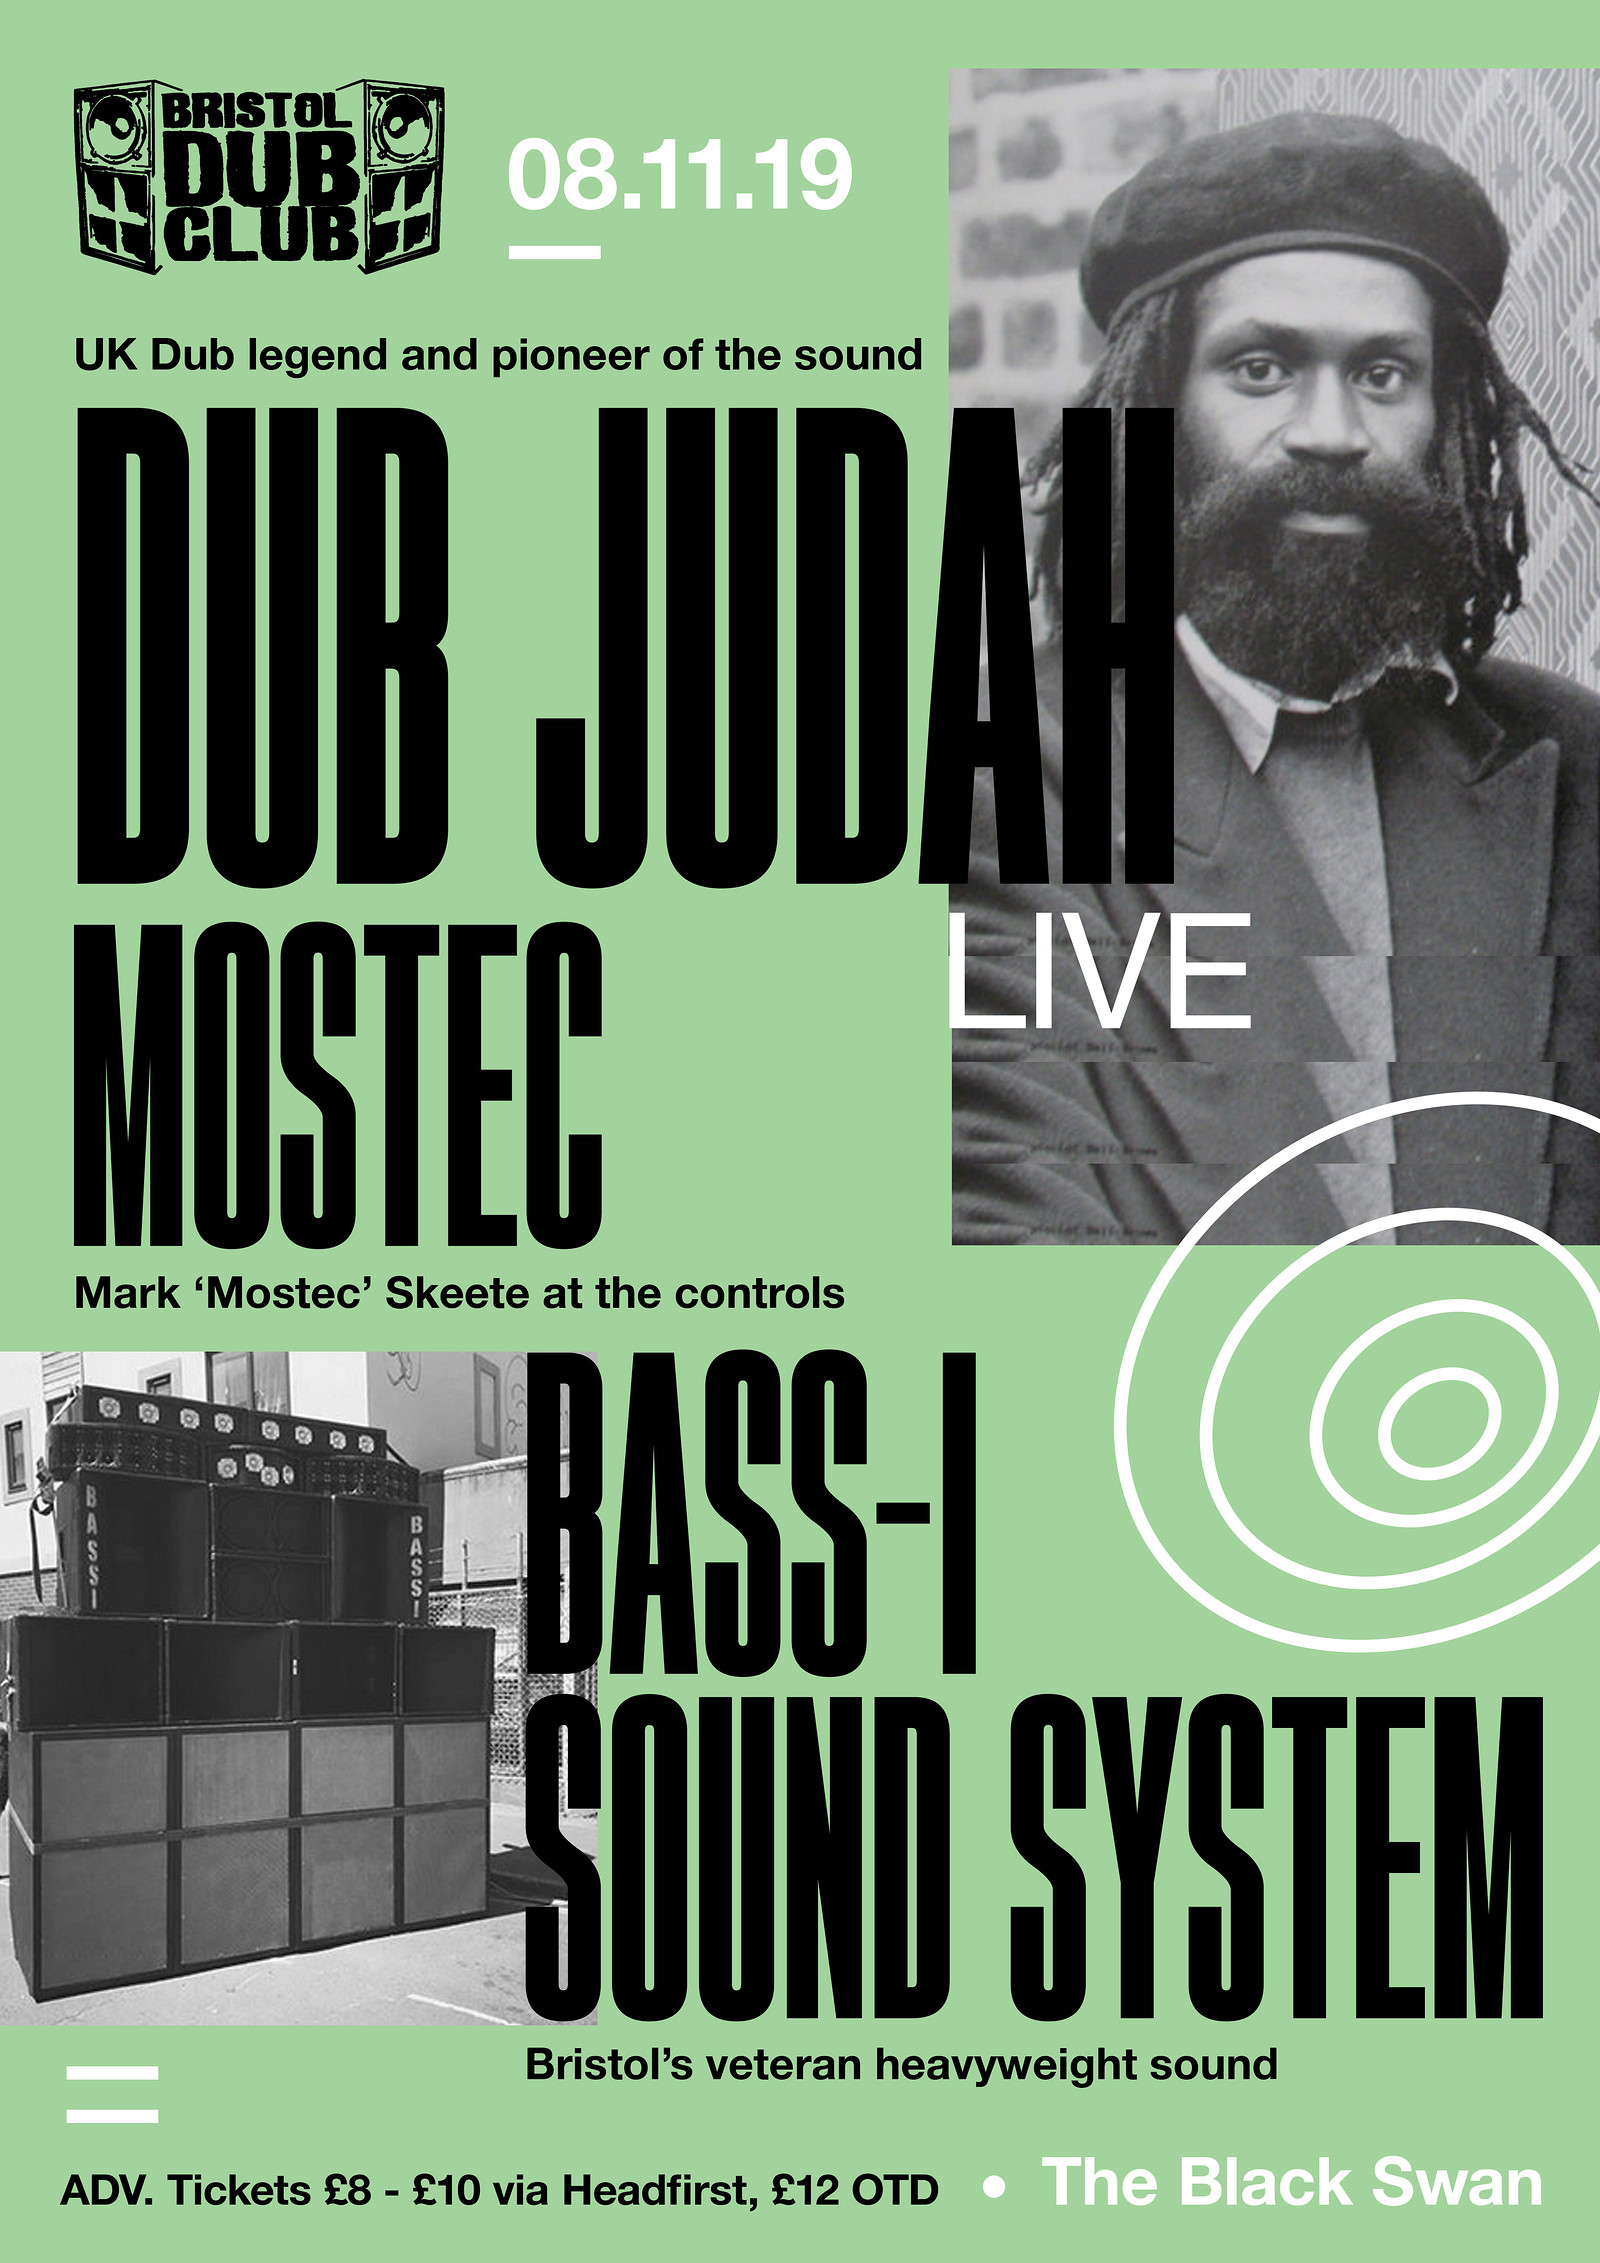 Bristol Dub Club w/ Dub Judah • Mostec • Bass-I at The Black Swan